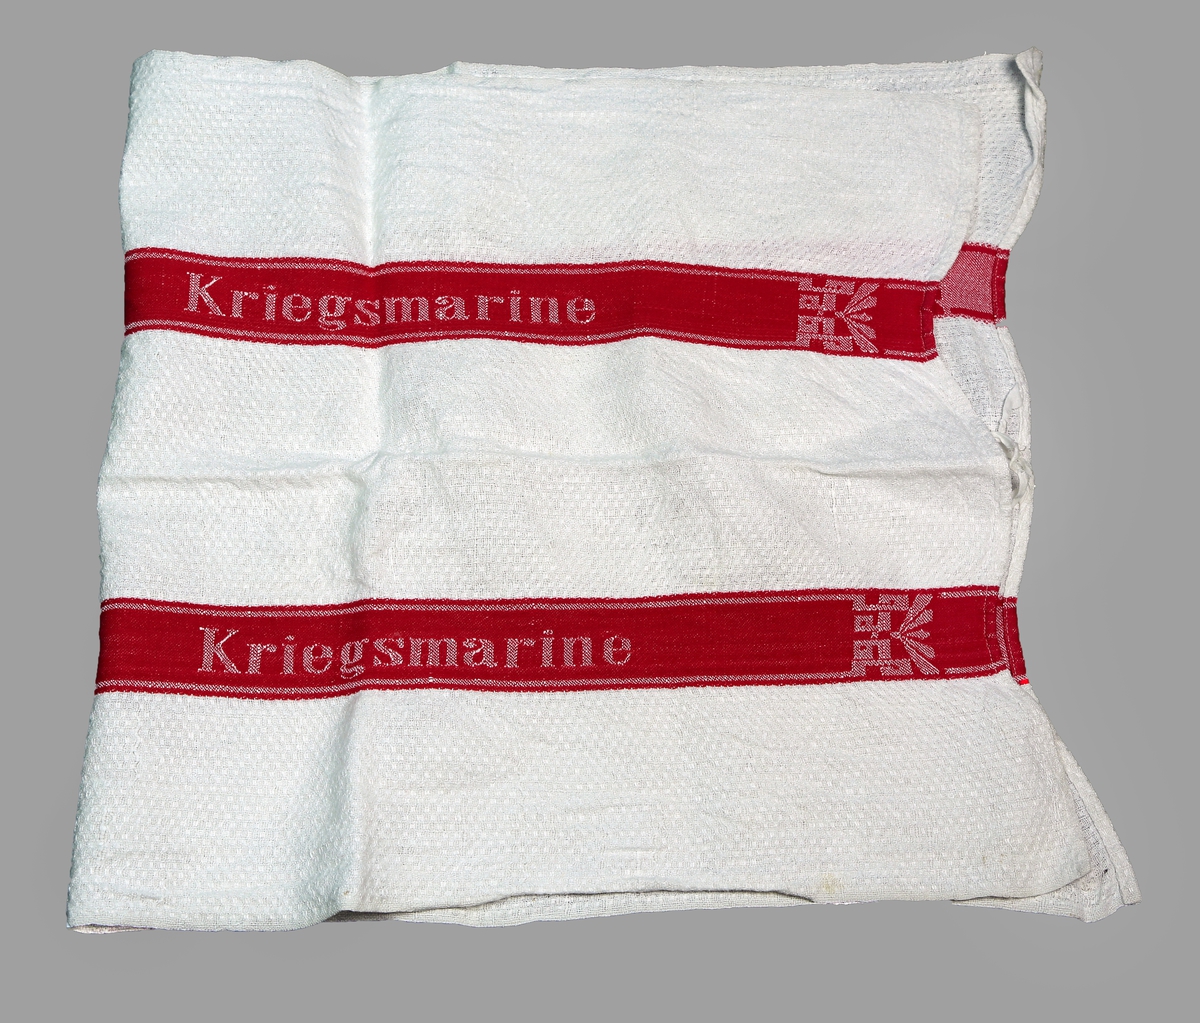 Røde render på langs med et symbol og teksten "Kriegsmarine"